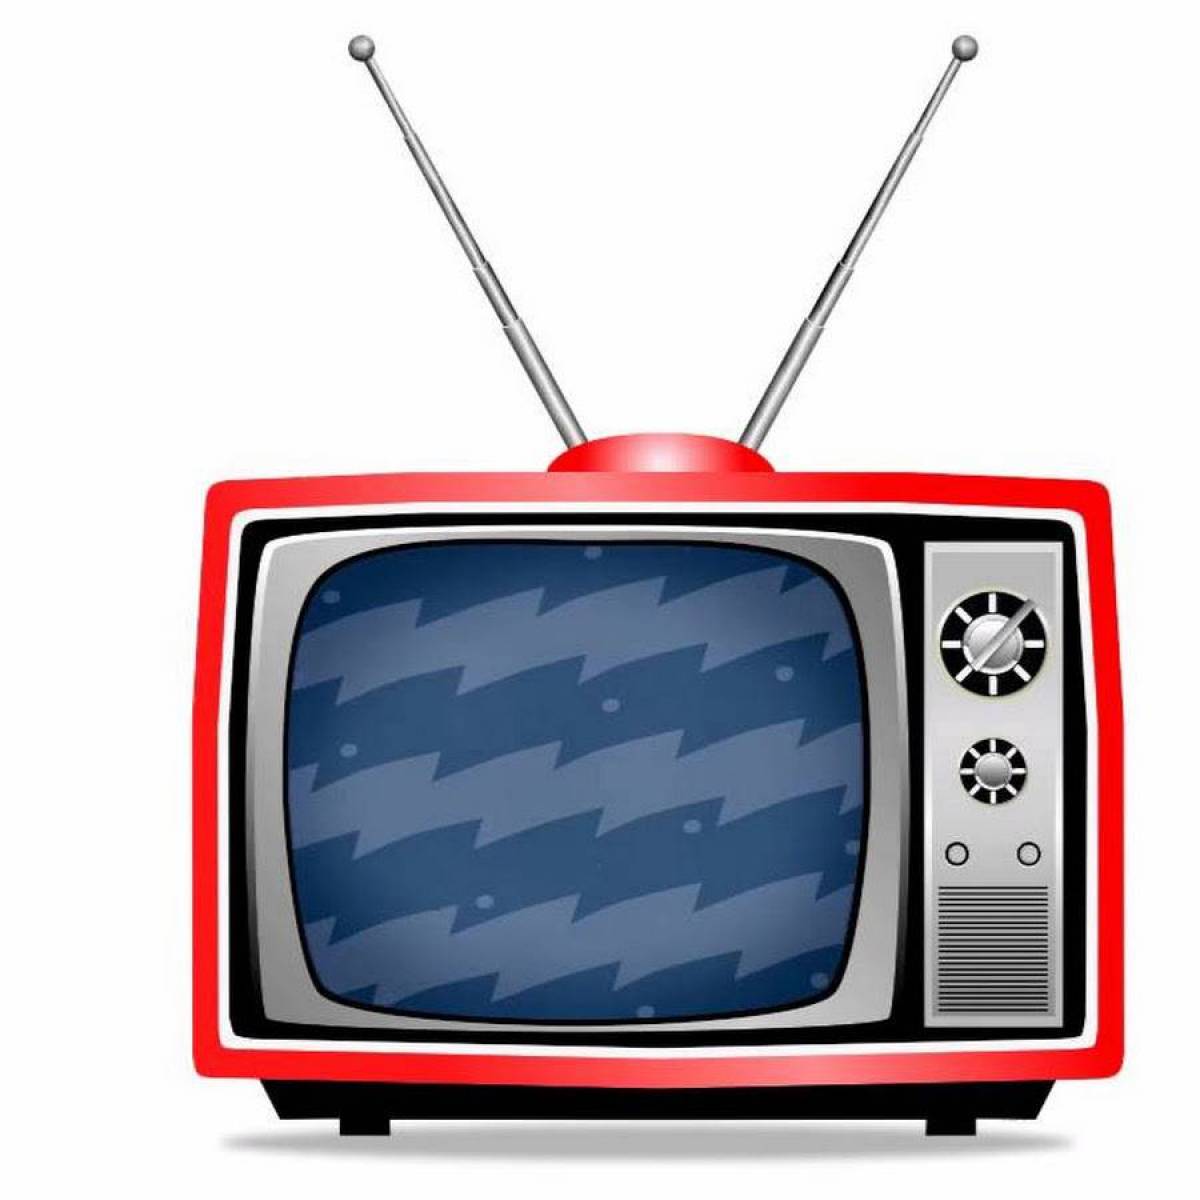 Изображение телевизора красное. Телевизор мультяшный. Телевизор для детей. Нарисовать телевизор. Телевизор для дошкольников.